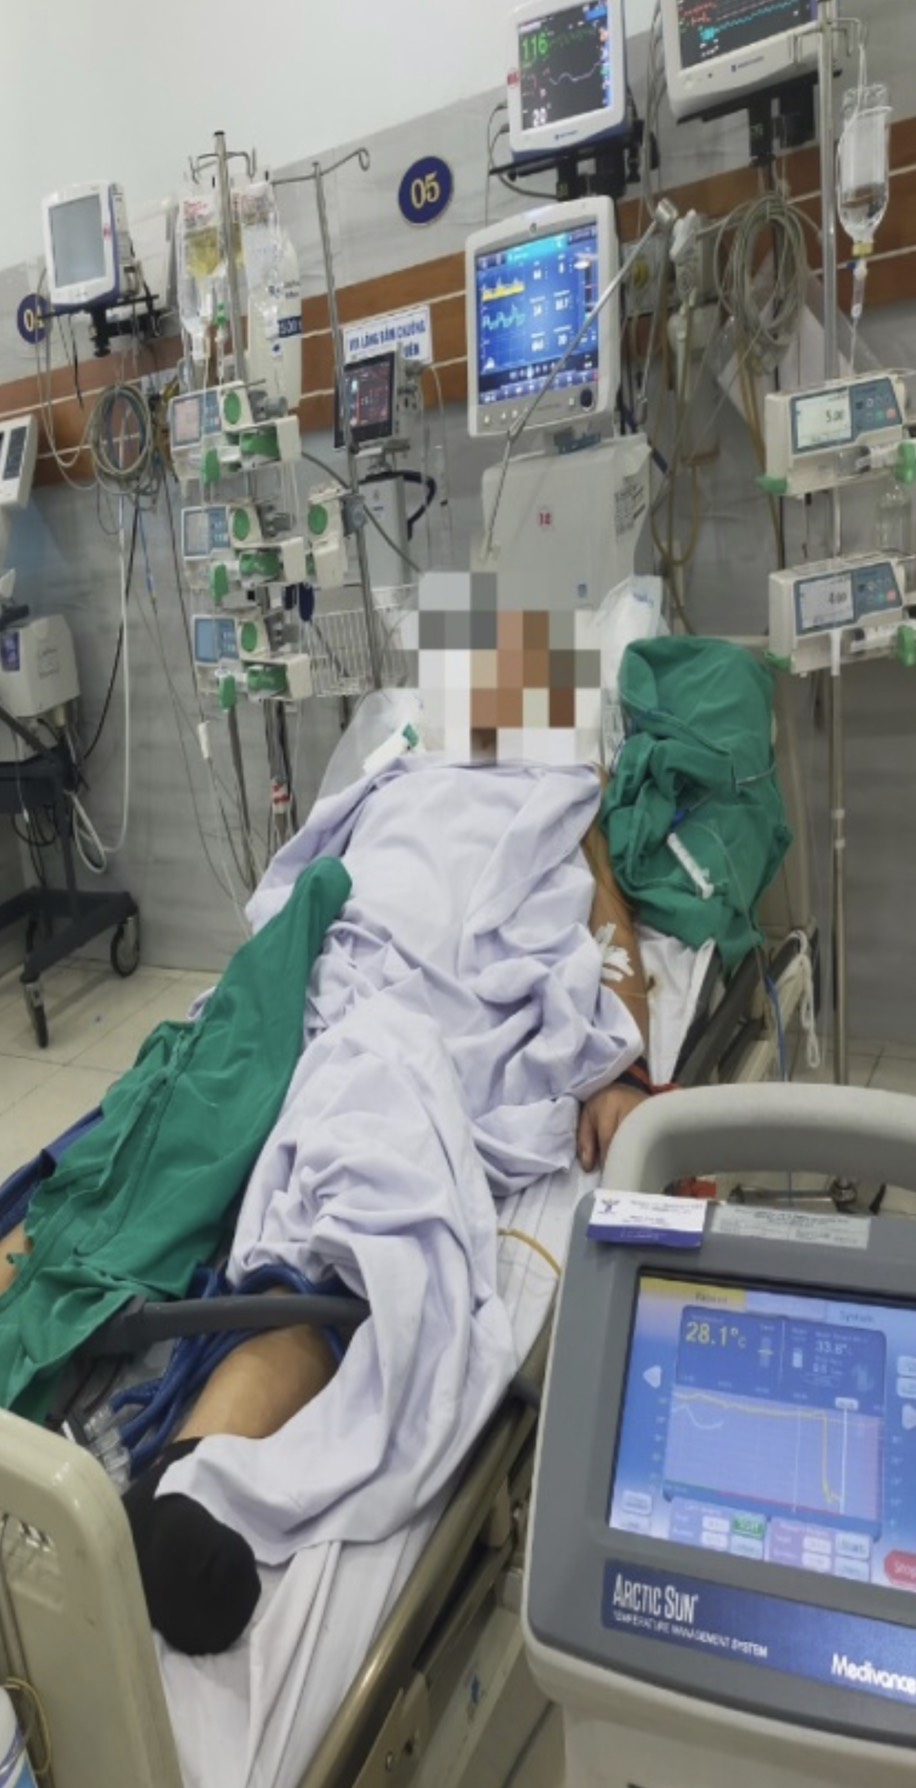 Bệnh nhân 77 tuổi ngừng tuần hoàn trong 2 giờ đã thoát chết nhờ kỹ thuật hạ thân nhiệt chỉ huy  - Ảnh 1.